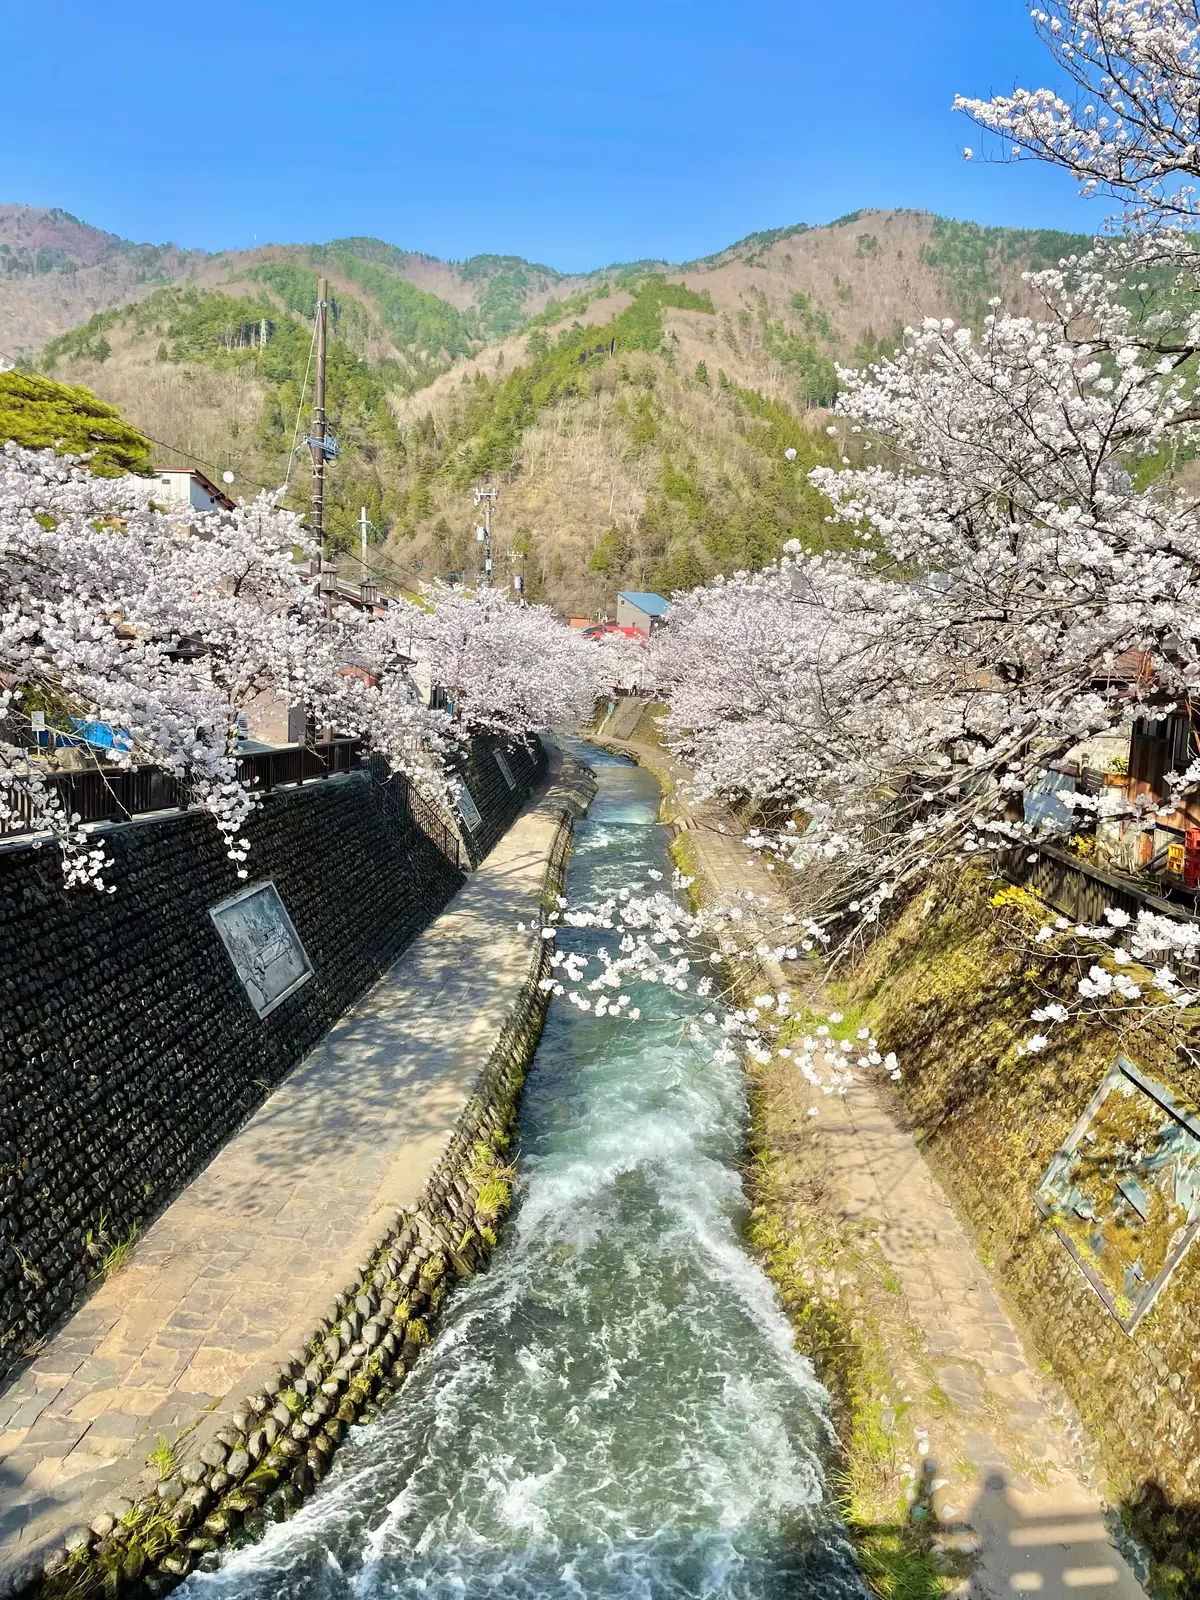 岐阜 飛騨にある可愛らしい外観とアットホームな店内が魅力な喫茶店「アメリカンベーカリー」近くの桜